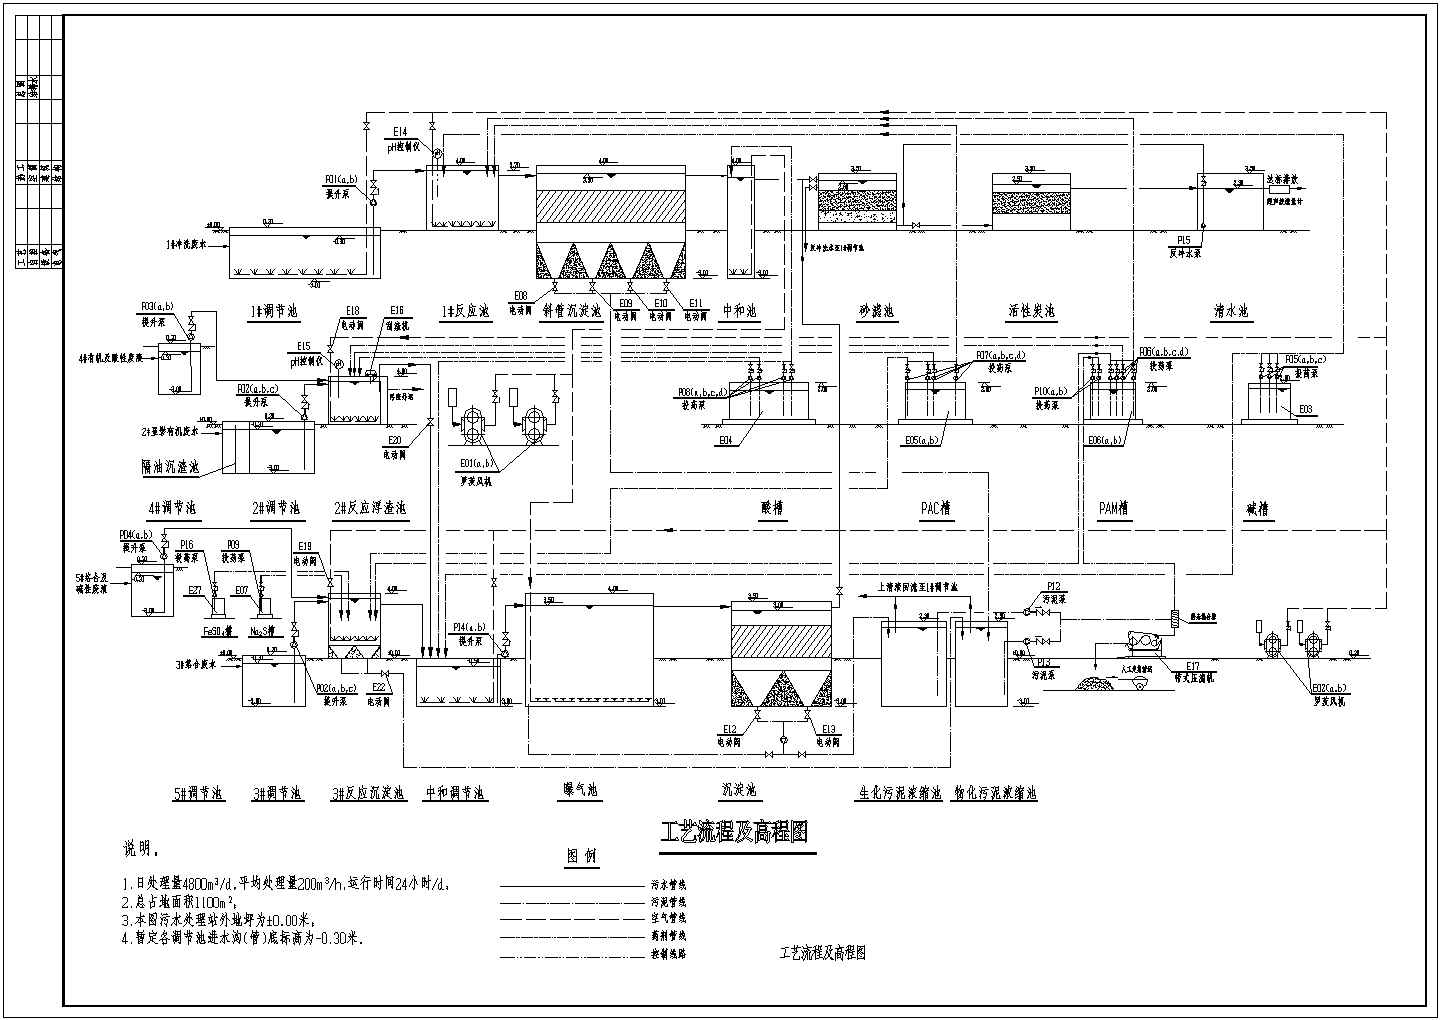 某印刷电路板厂污水水解酸化处理流程图